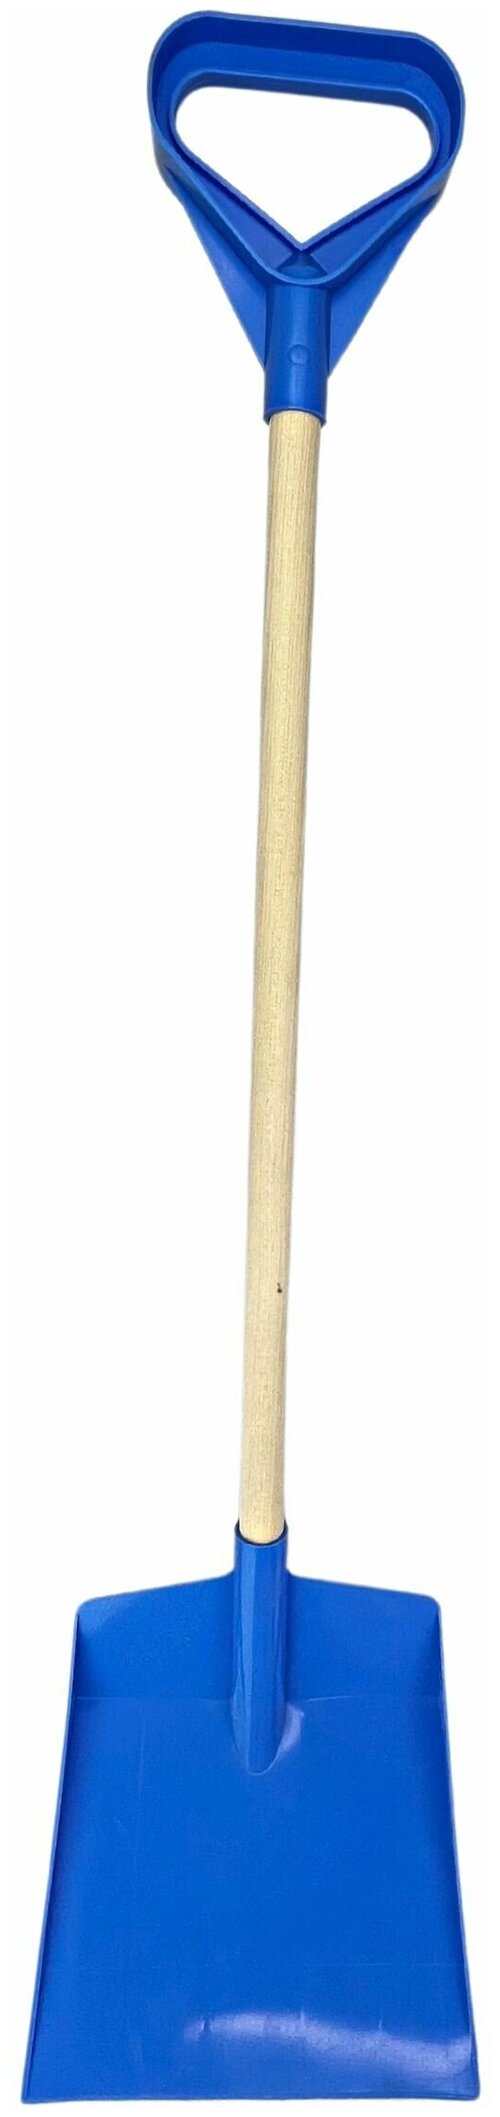 Лопата детская, с деревянной ручкой, для снега и песка, синяя, размер лопаты - 20 х 5 х 85 см.